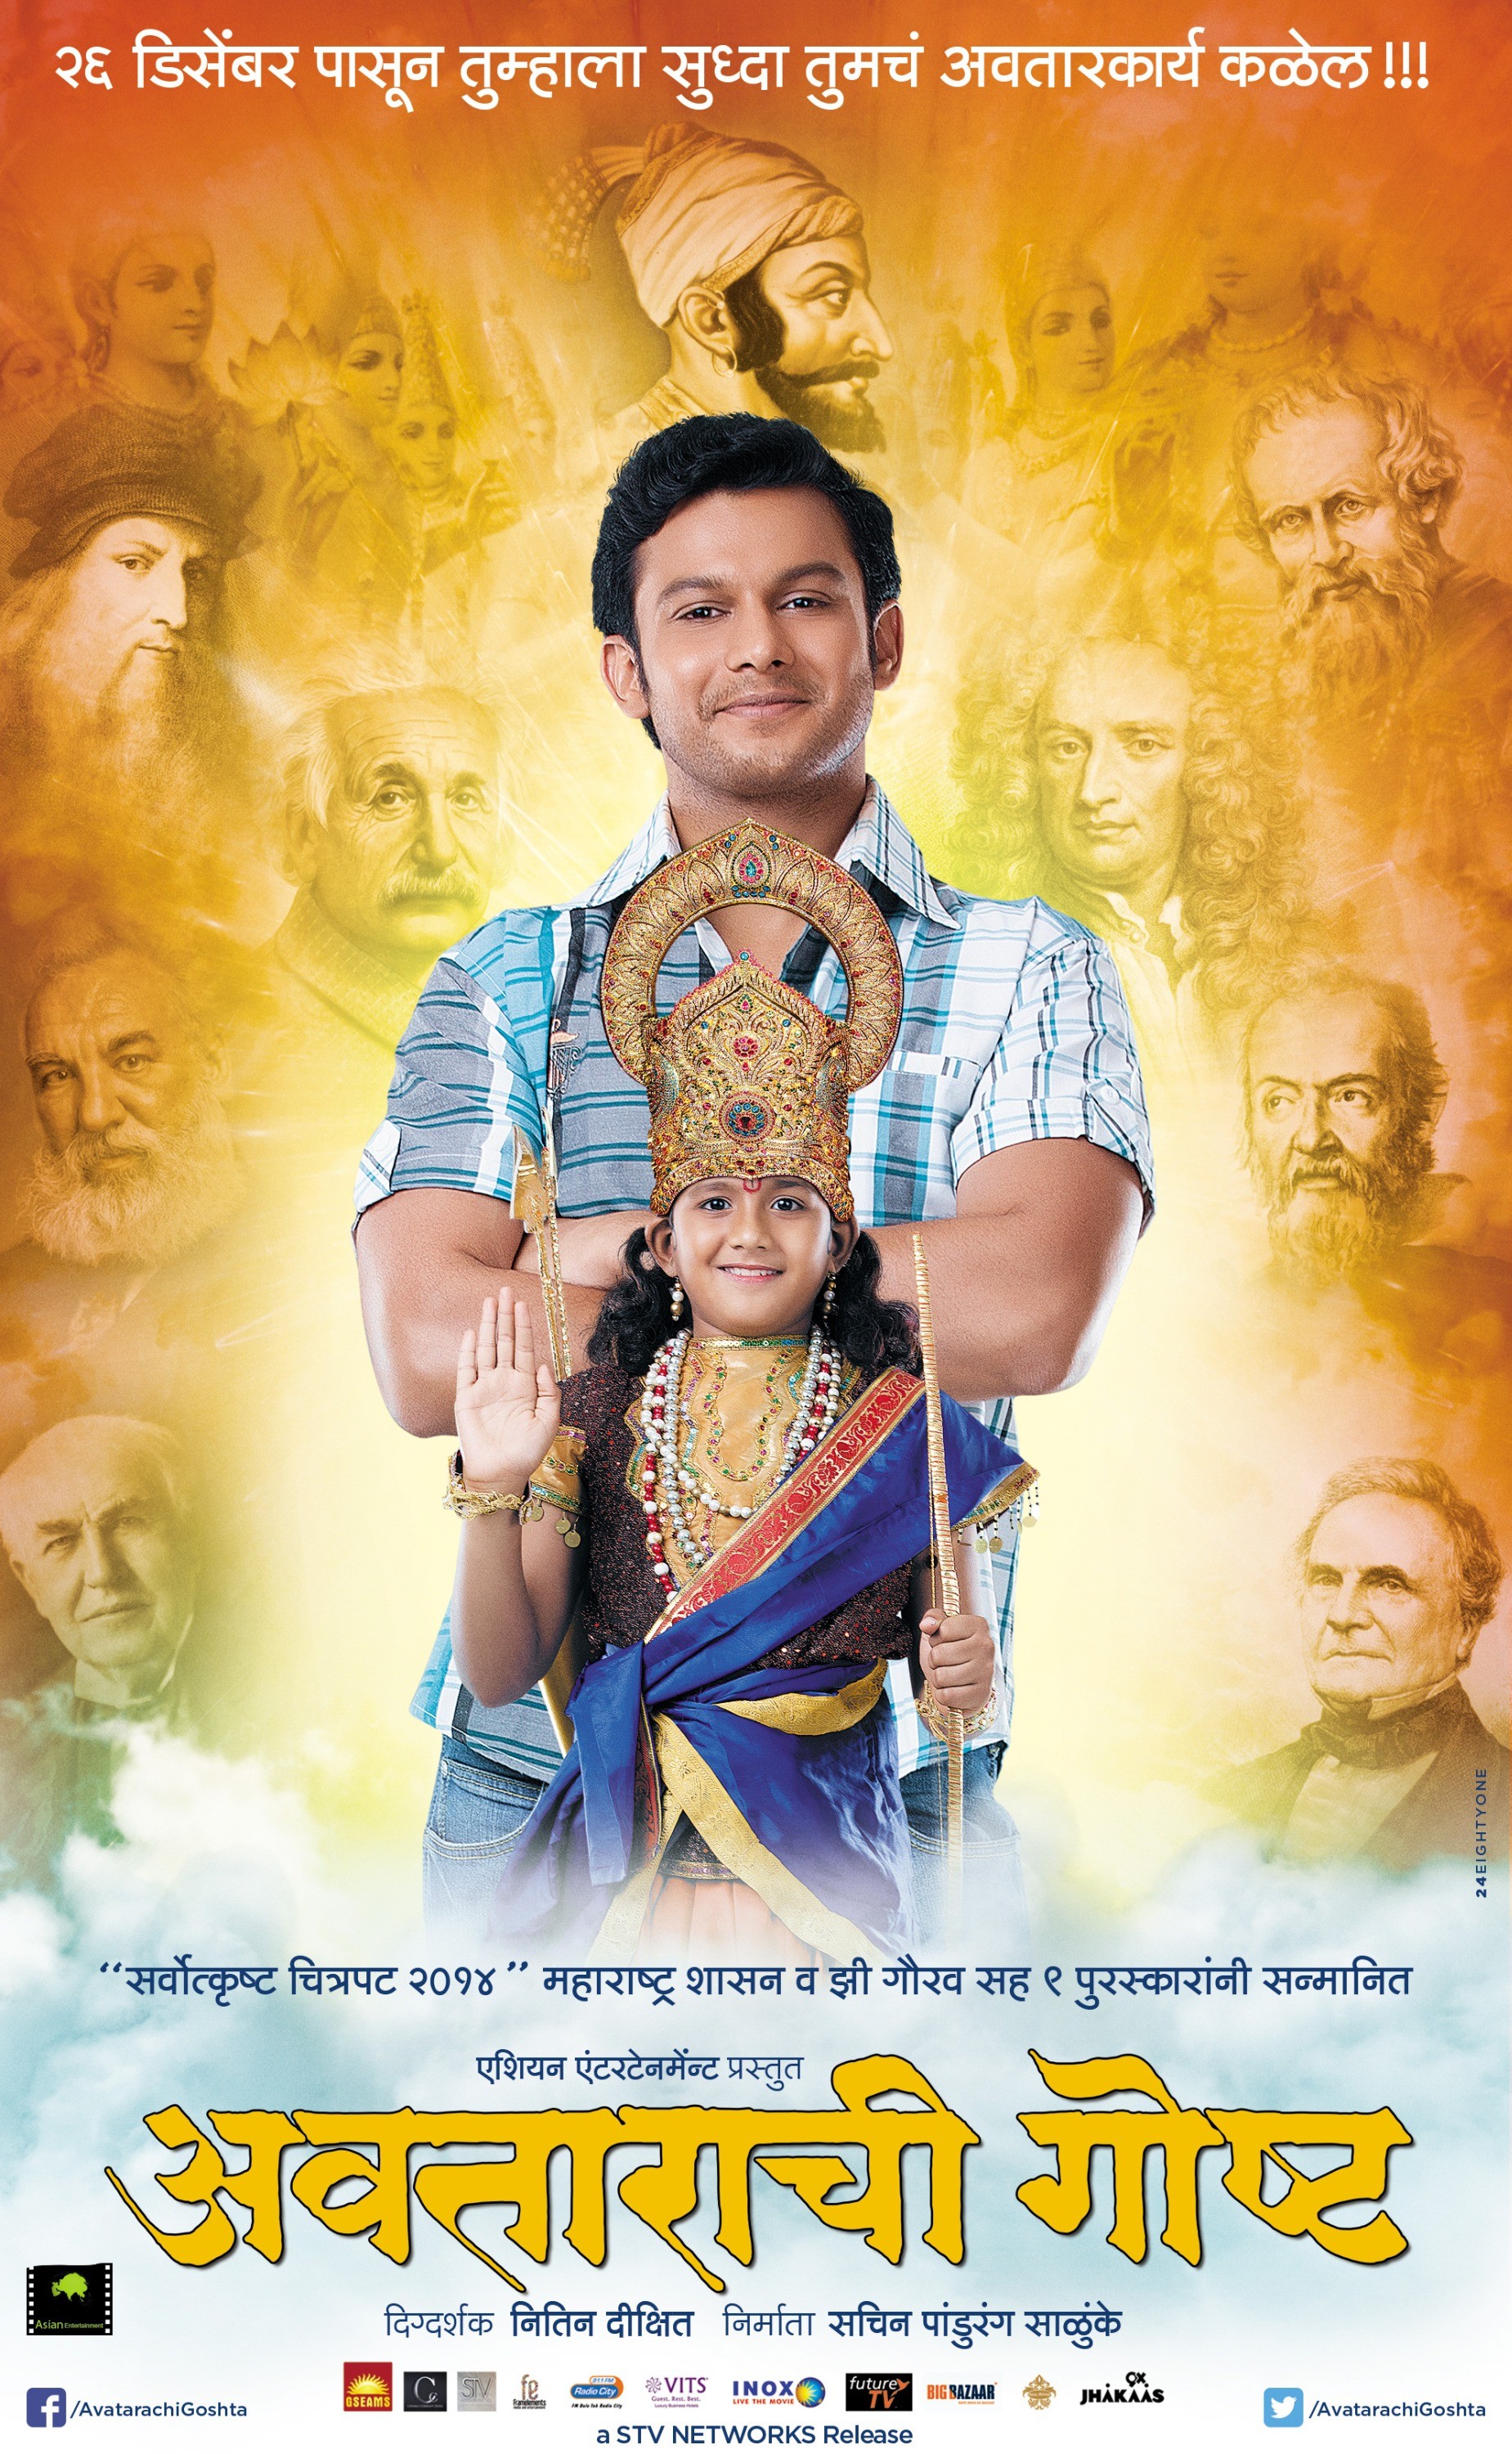 Mega Sized Movie Poster Image for Avatarachi Goshta (#3 of 4)